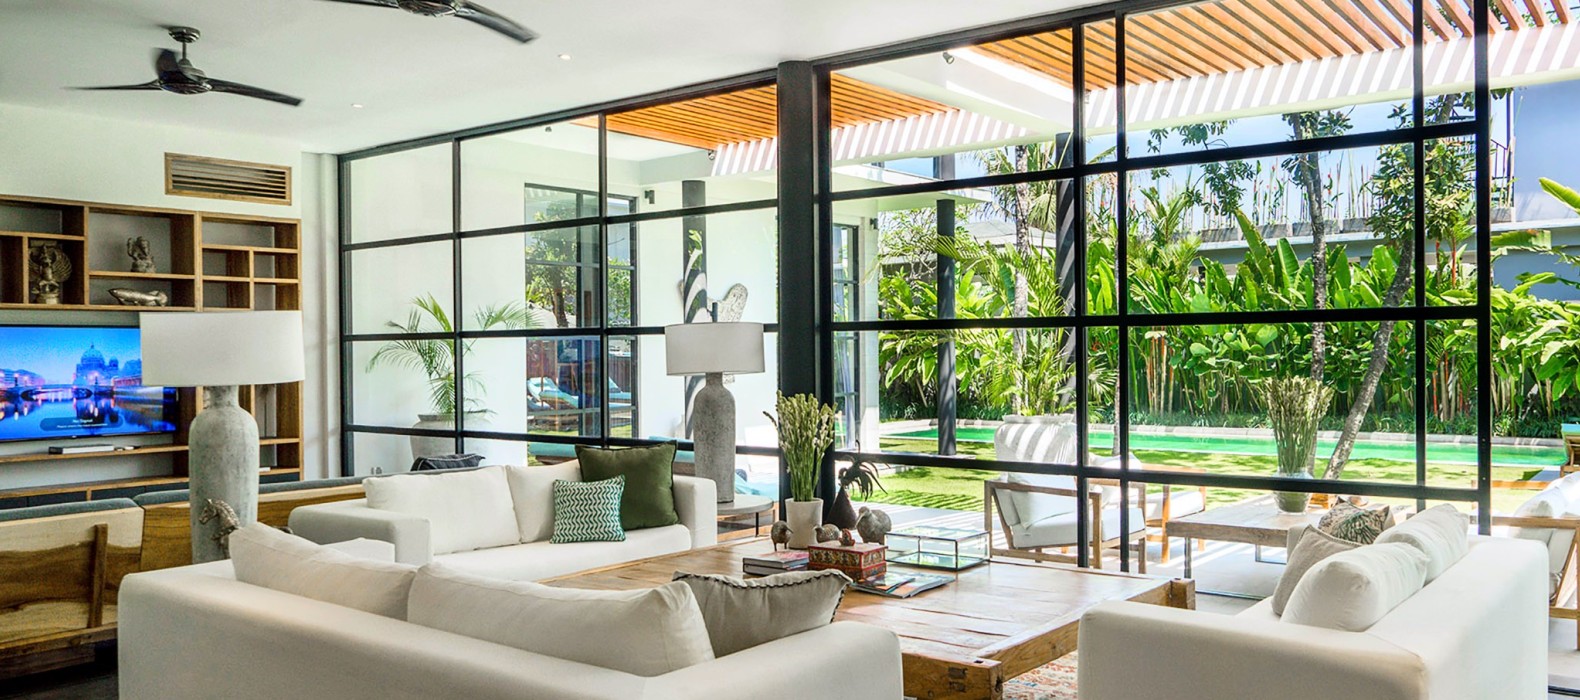 Living room of Villa Skybound in Bali